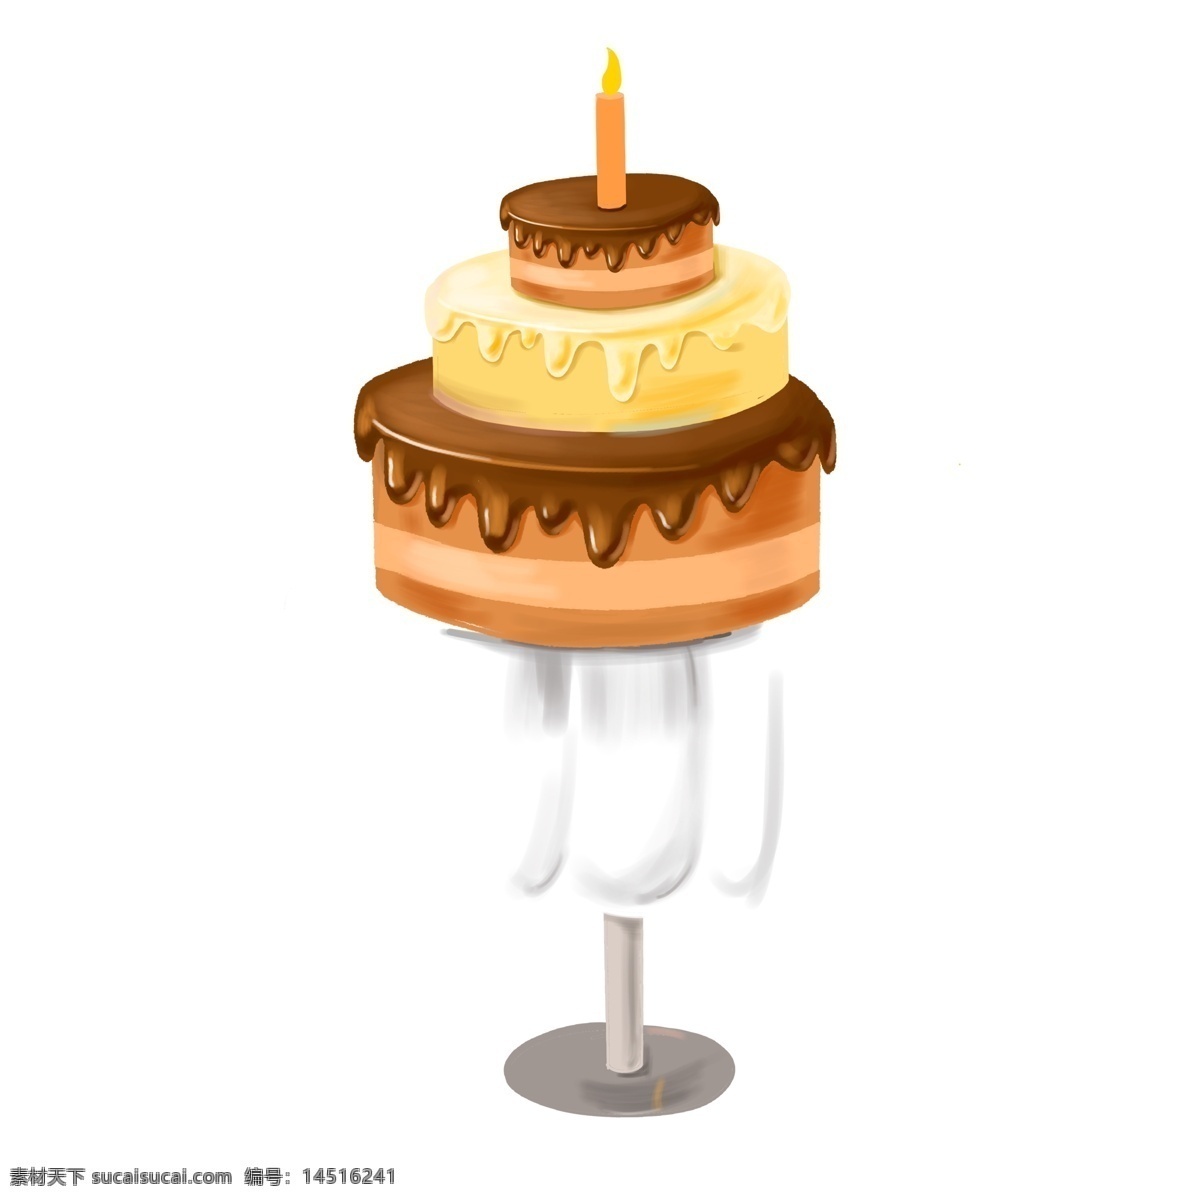 手绘 一个 生日蛋糕 元素 卡通 美食 甜点 蛋糕 插画设计